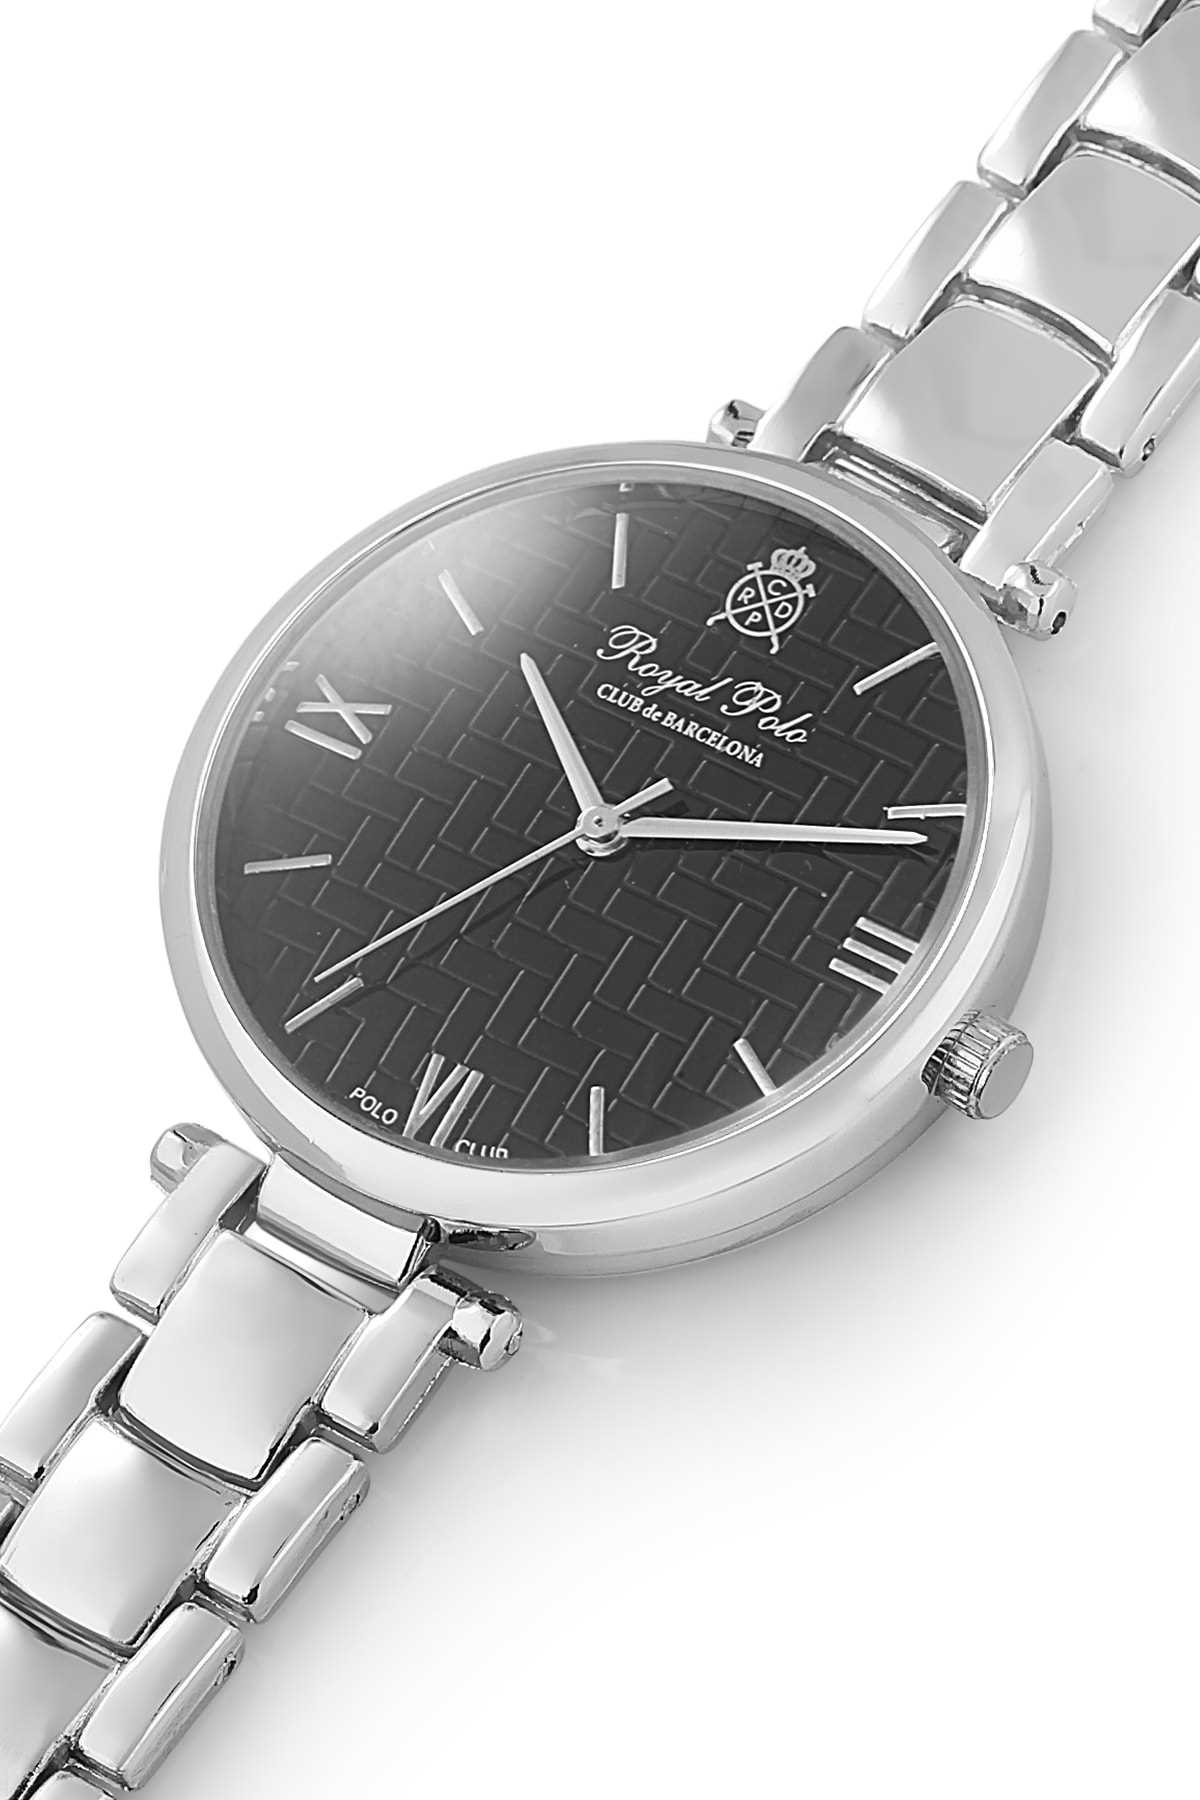 خرید نقدی ساعت زنانه برند Royal Club De Polo Barcelona رنگ نقره کد ty52953197